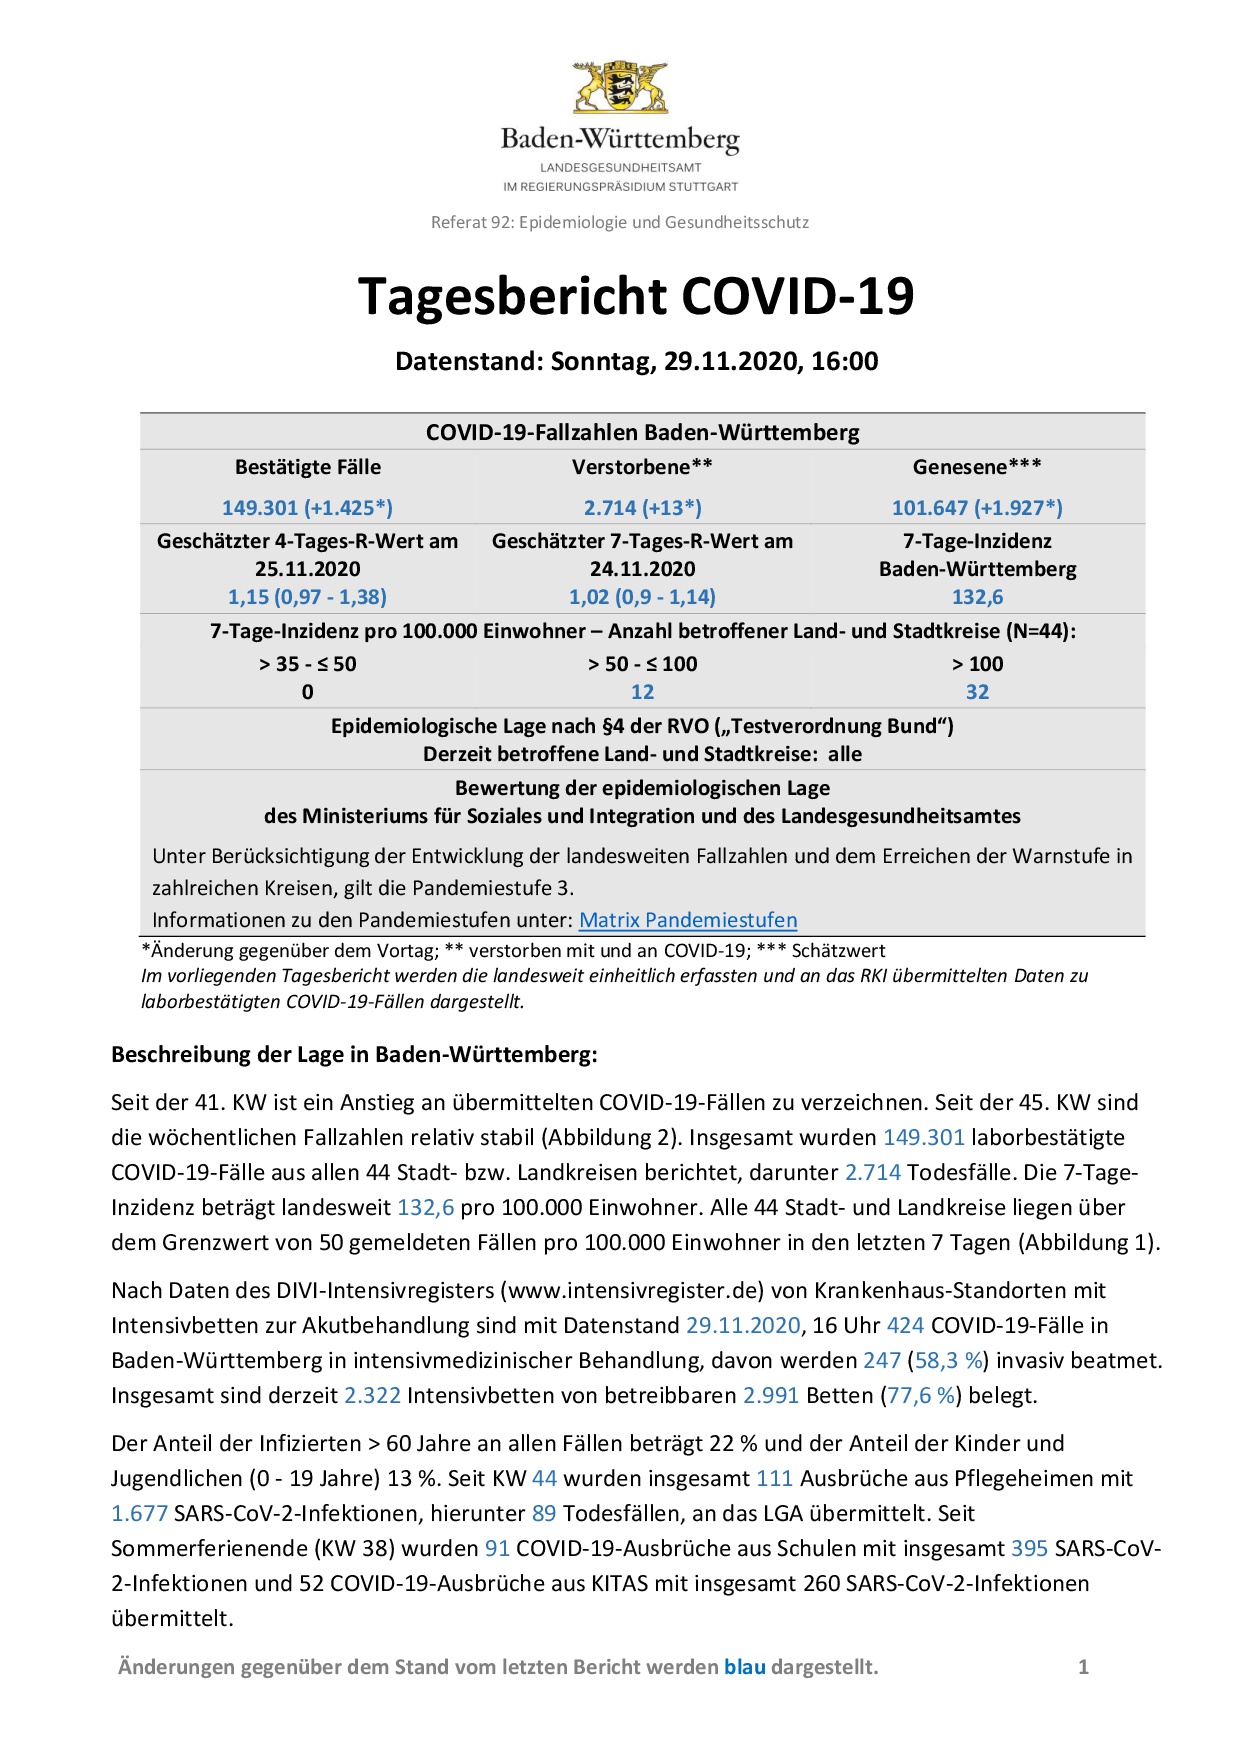 COVID-19 Tagesbericht (29.11.2020) des Landesgesundheitsamts Baden-Württemberg – (ausführlicher)